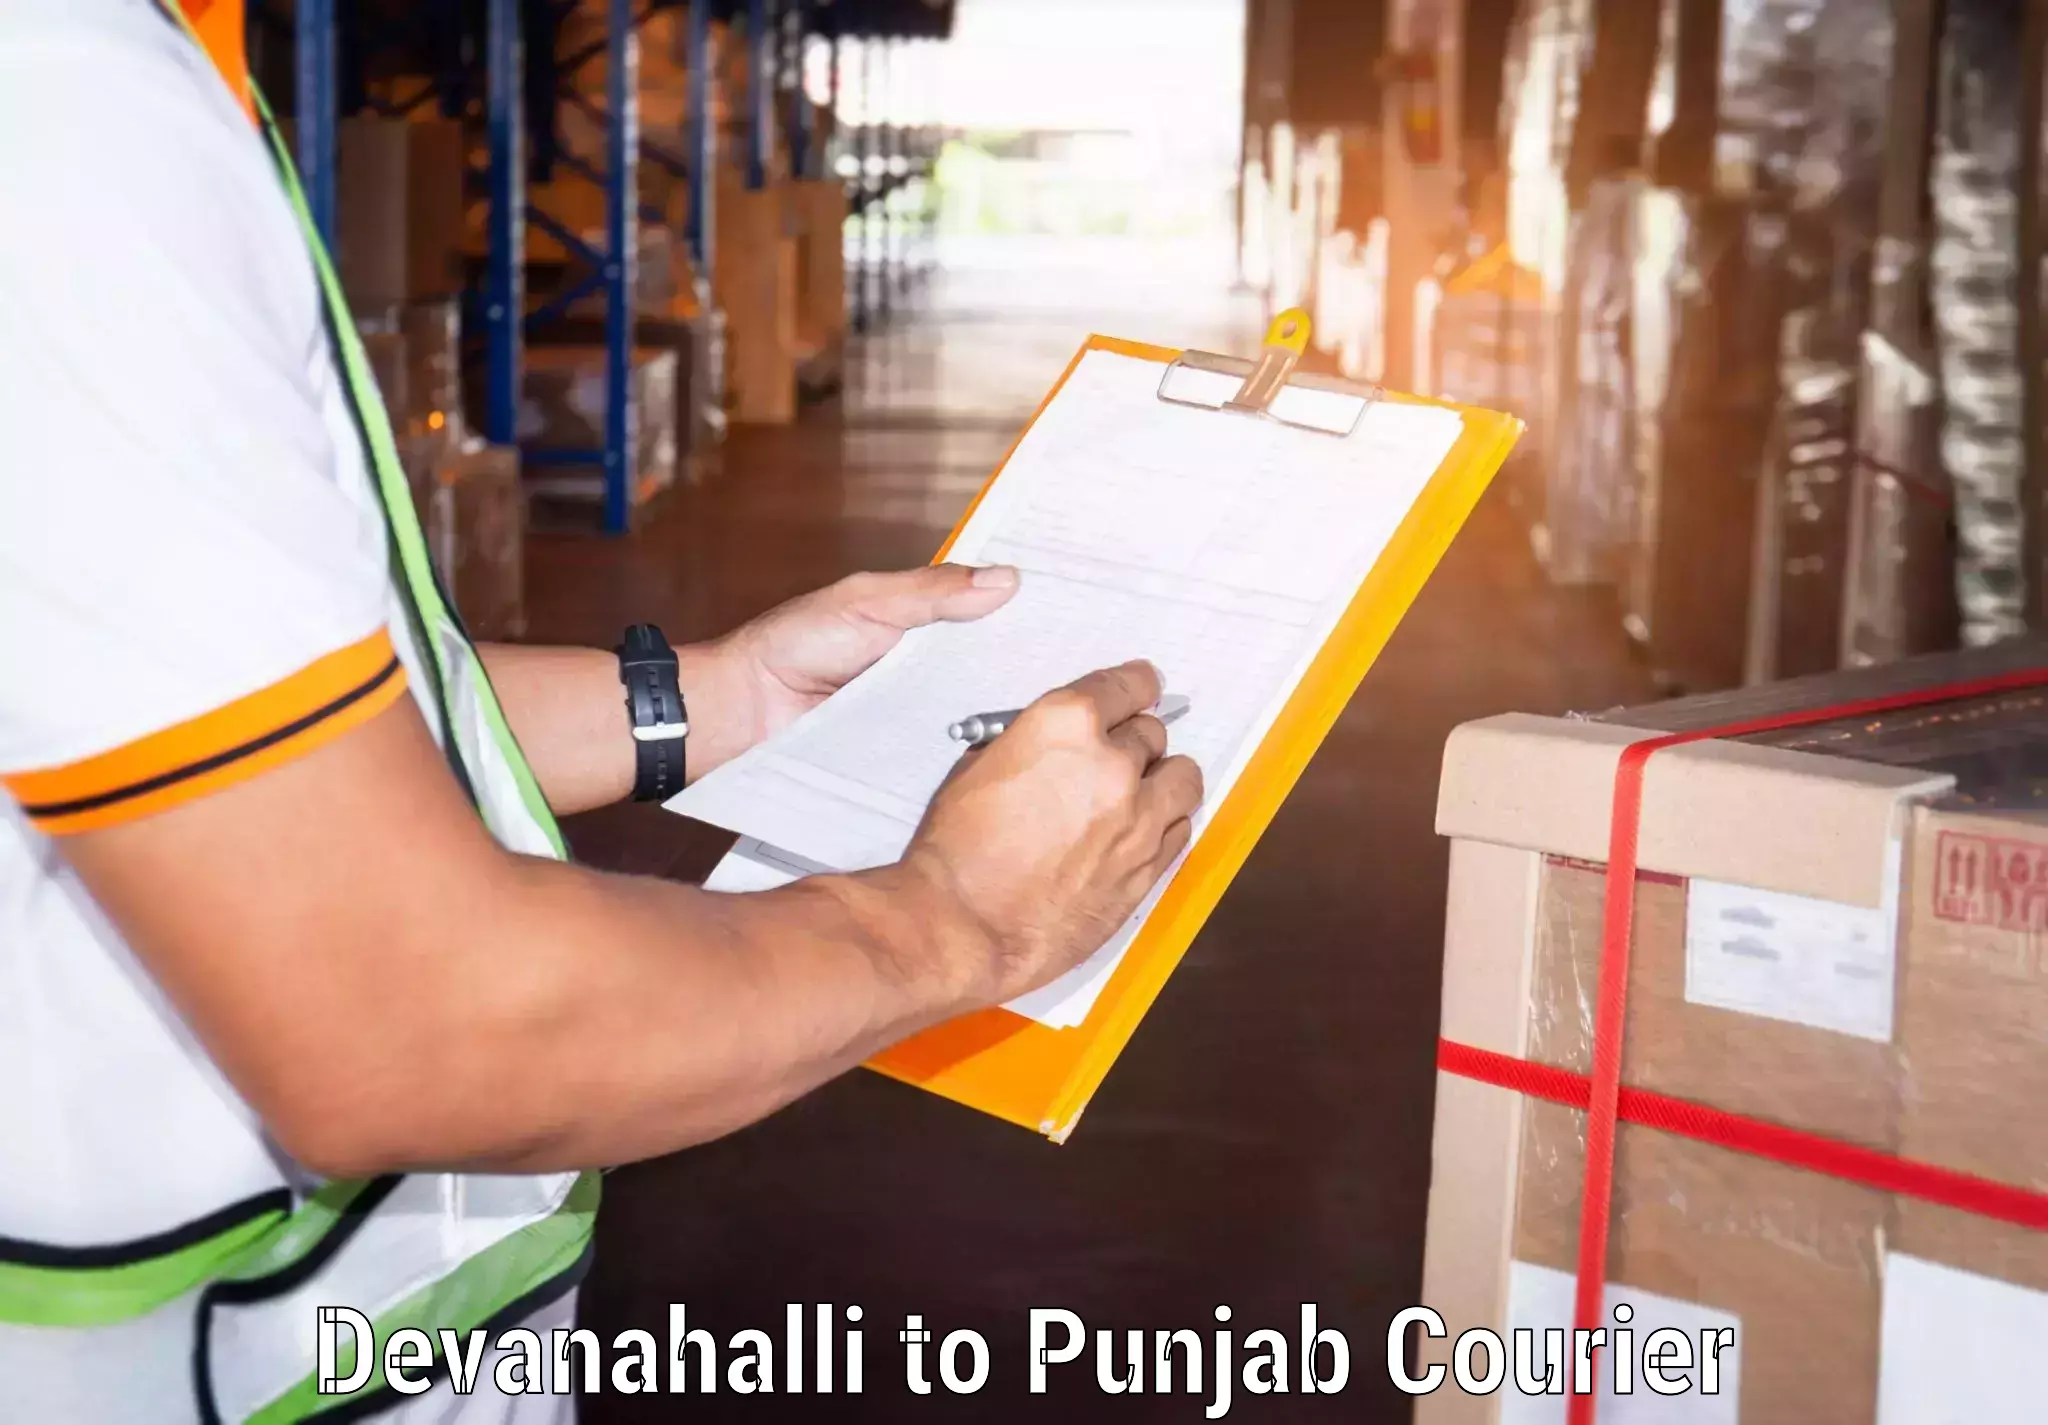 Courier service comparison Devanahalli to Punjab